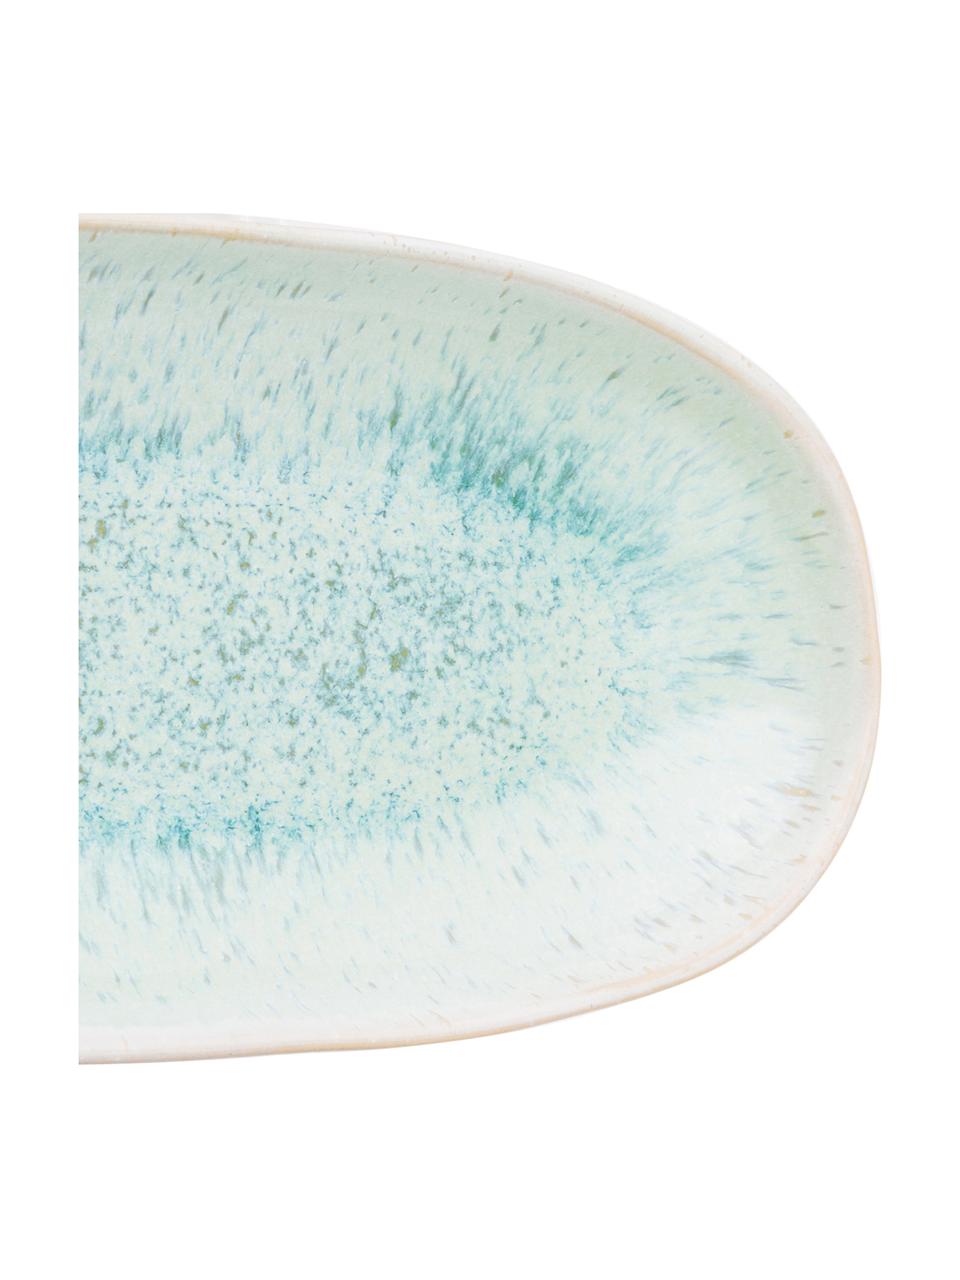 Handbeschilderde serveerplateau Areia met reactief glazuur, L 23 x B 12 cm, Keramiek, Mintgroen, gebroken wit, beige, 12 x 23 cm